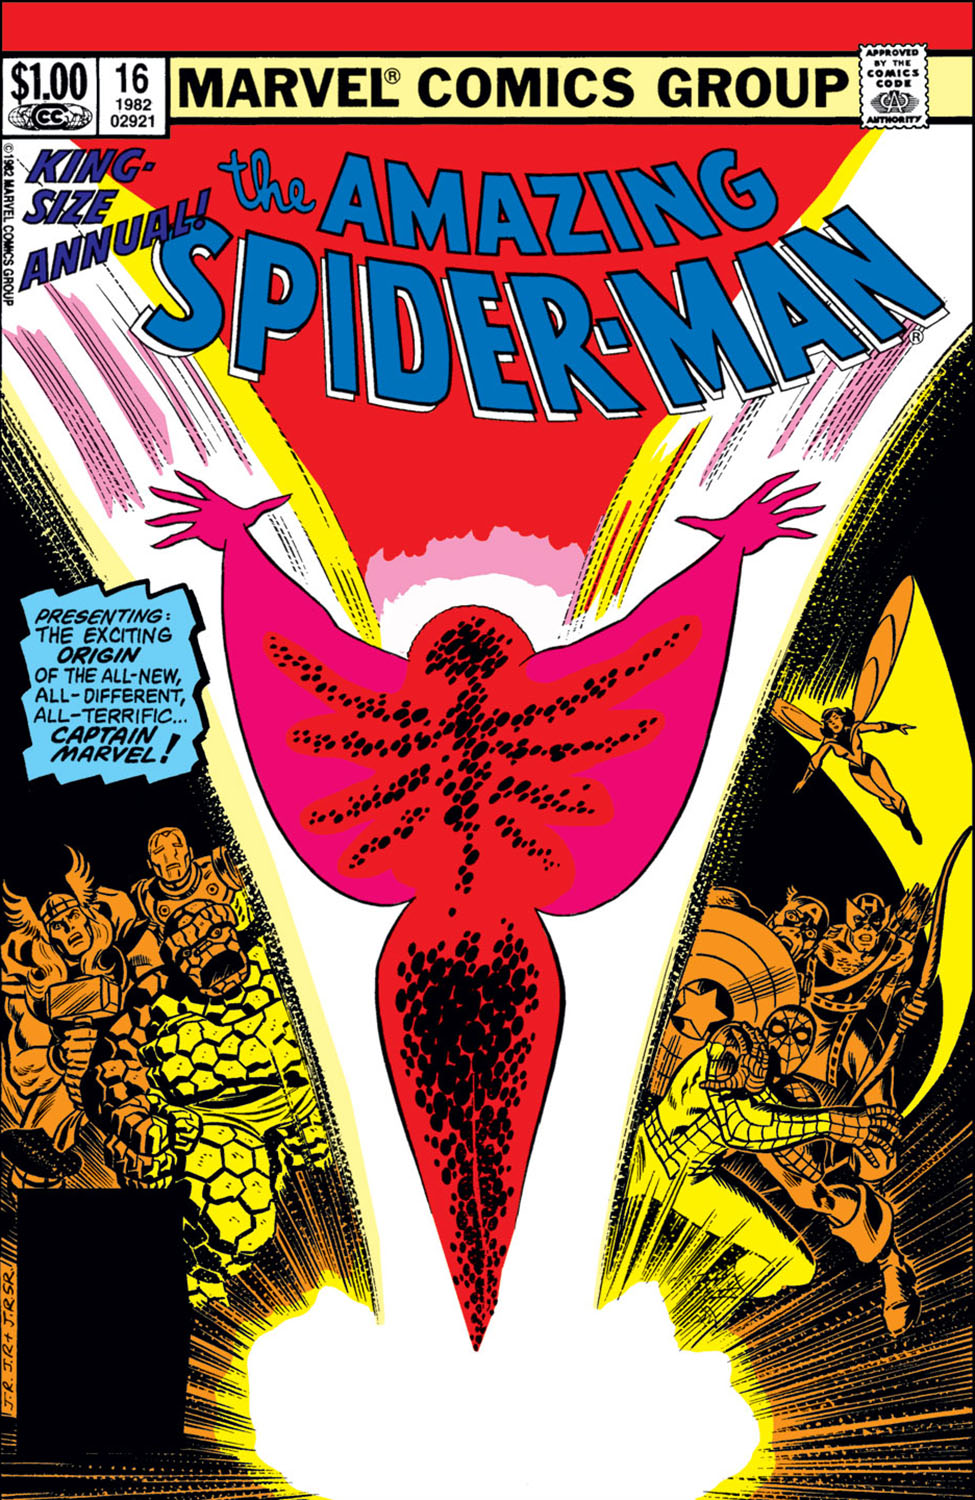 Amazing Spider-Man Annual (1964) #16